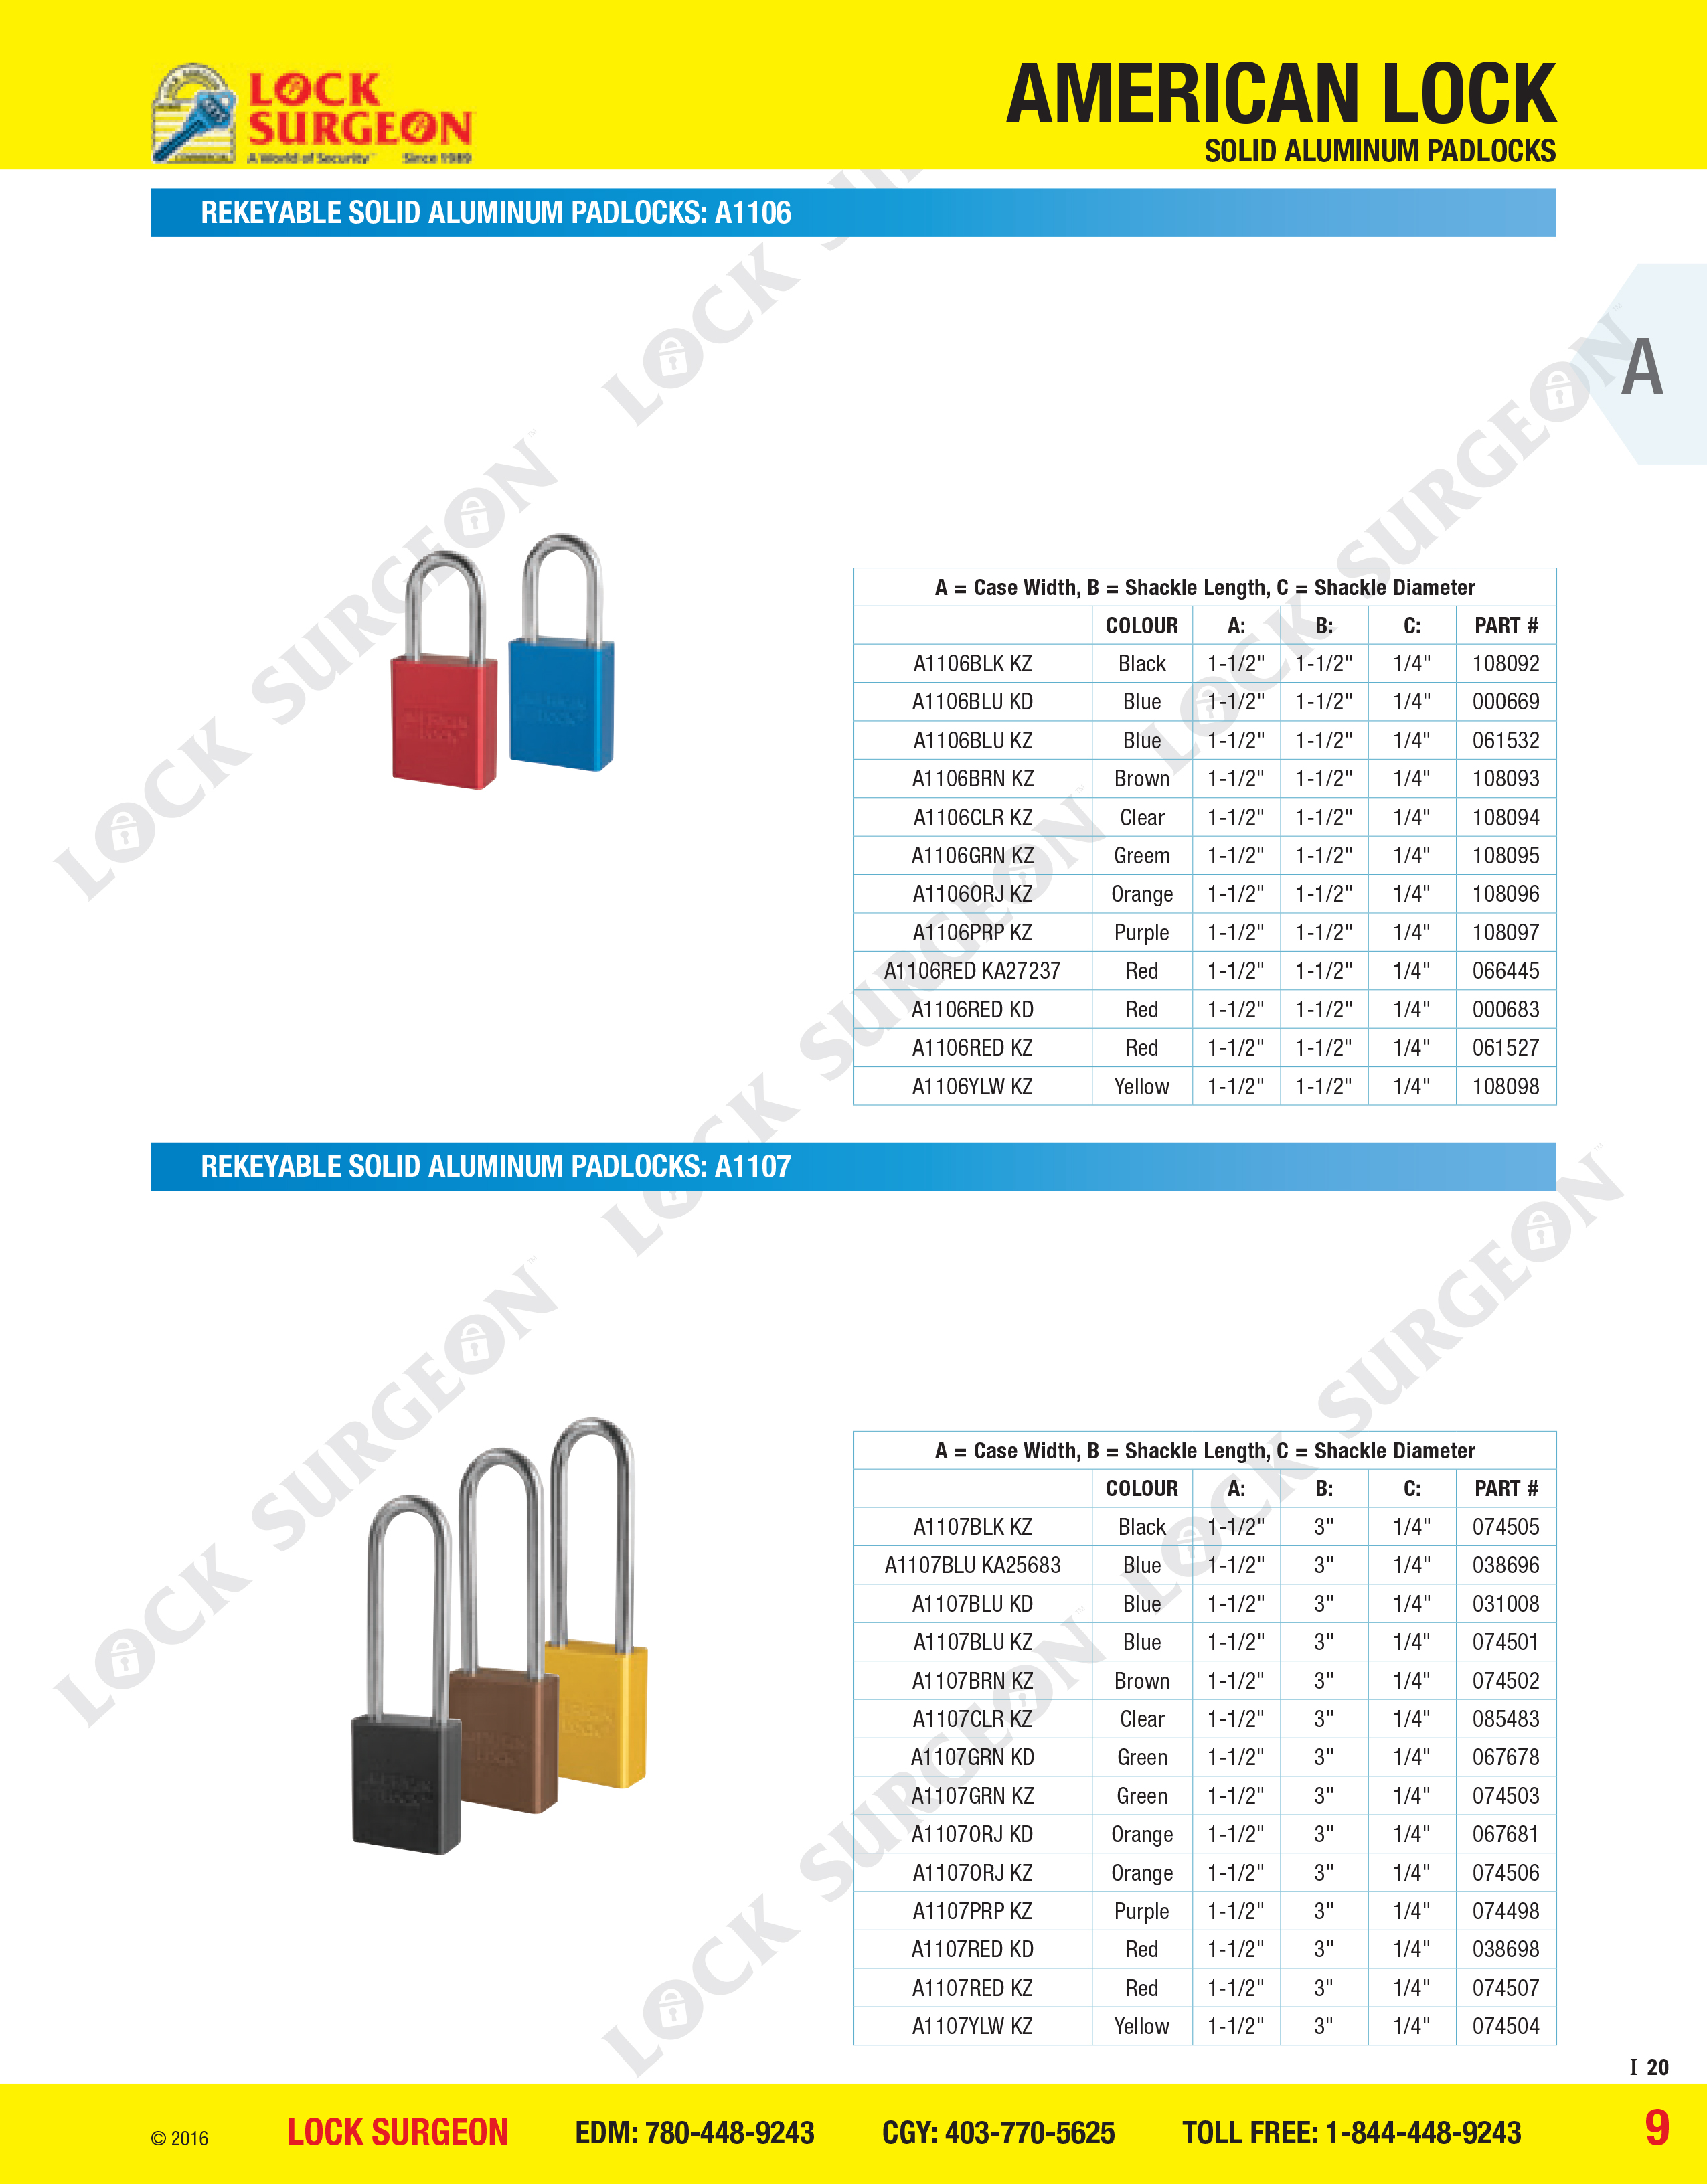 Leduc Rekeyable solid aluminium padlocks A1106 or A1107 series